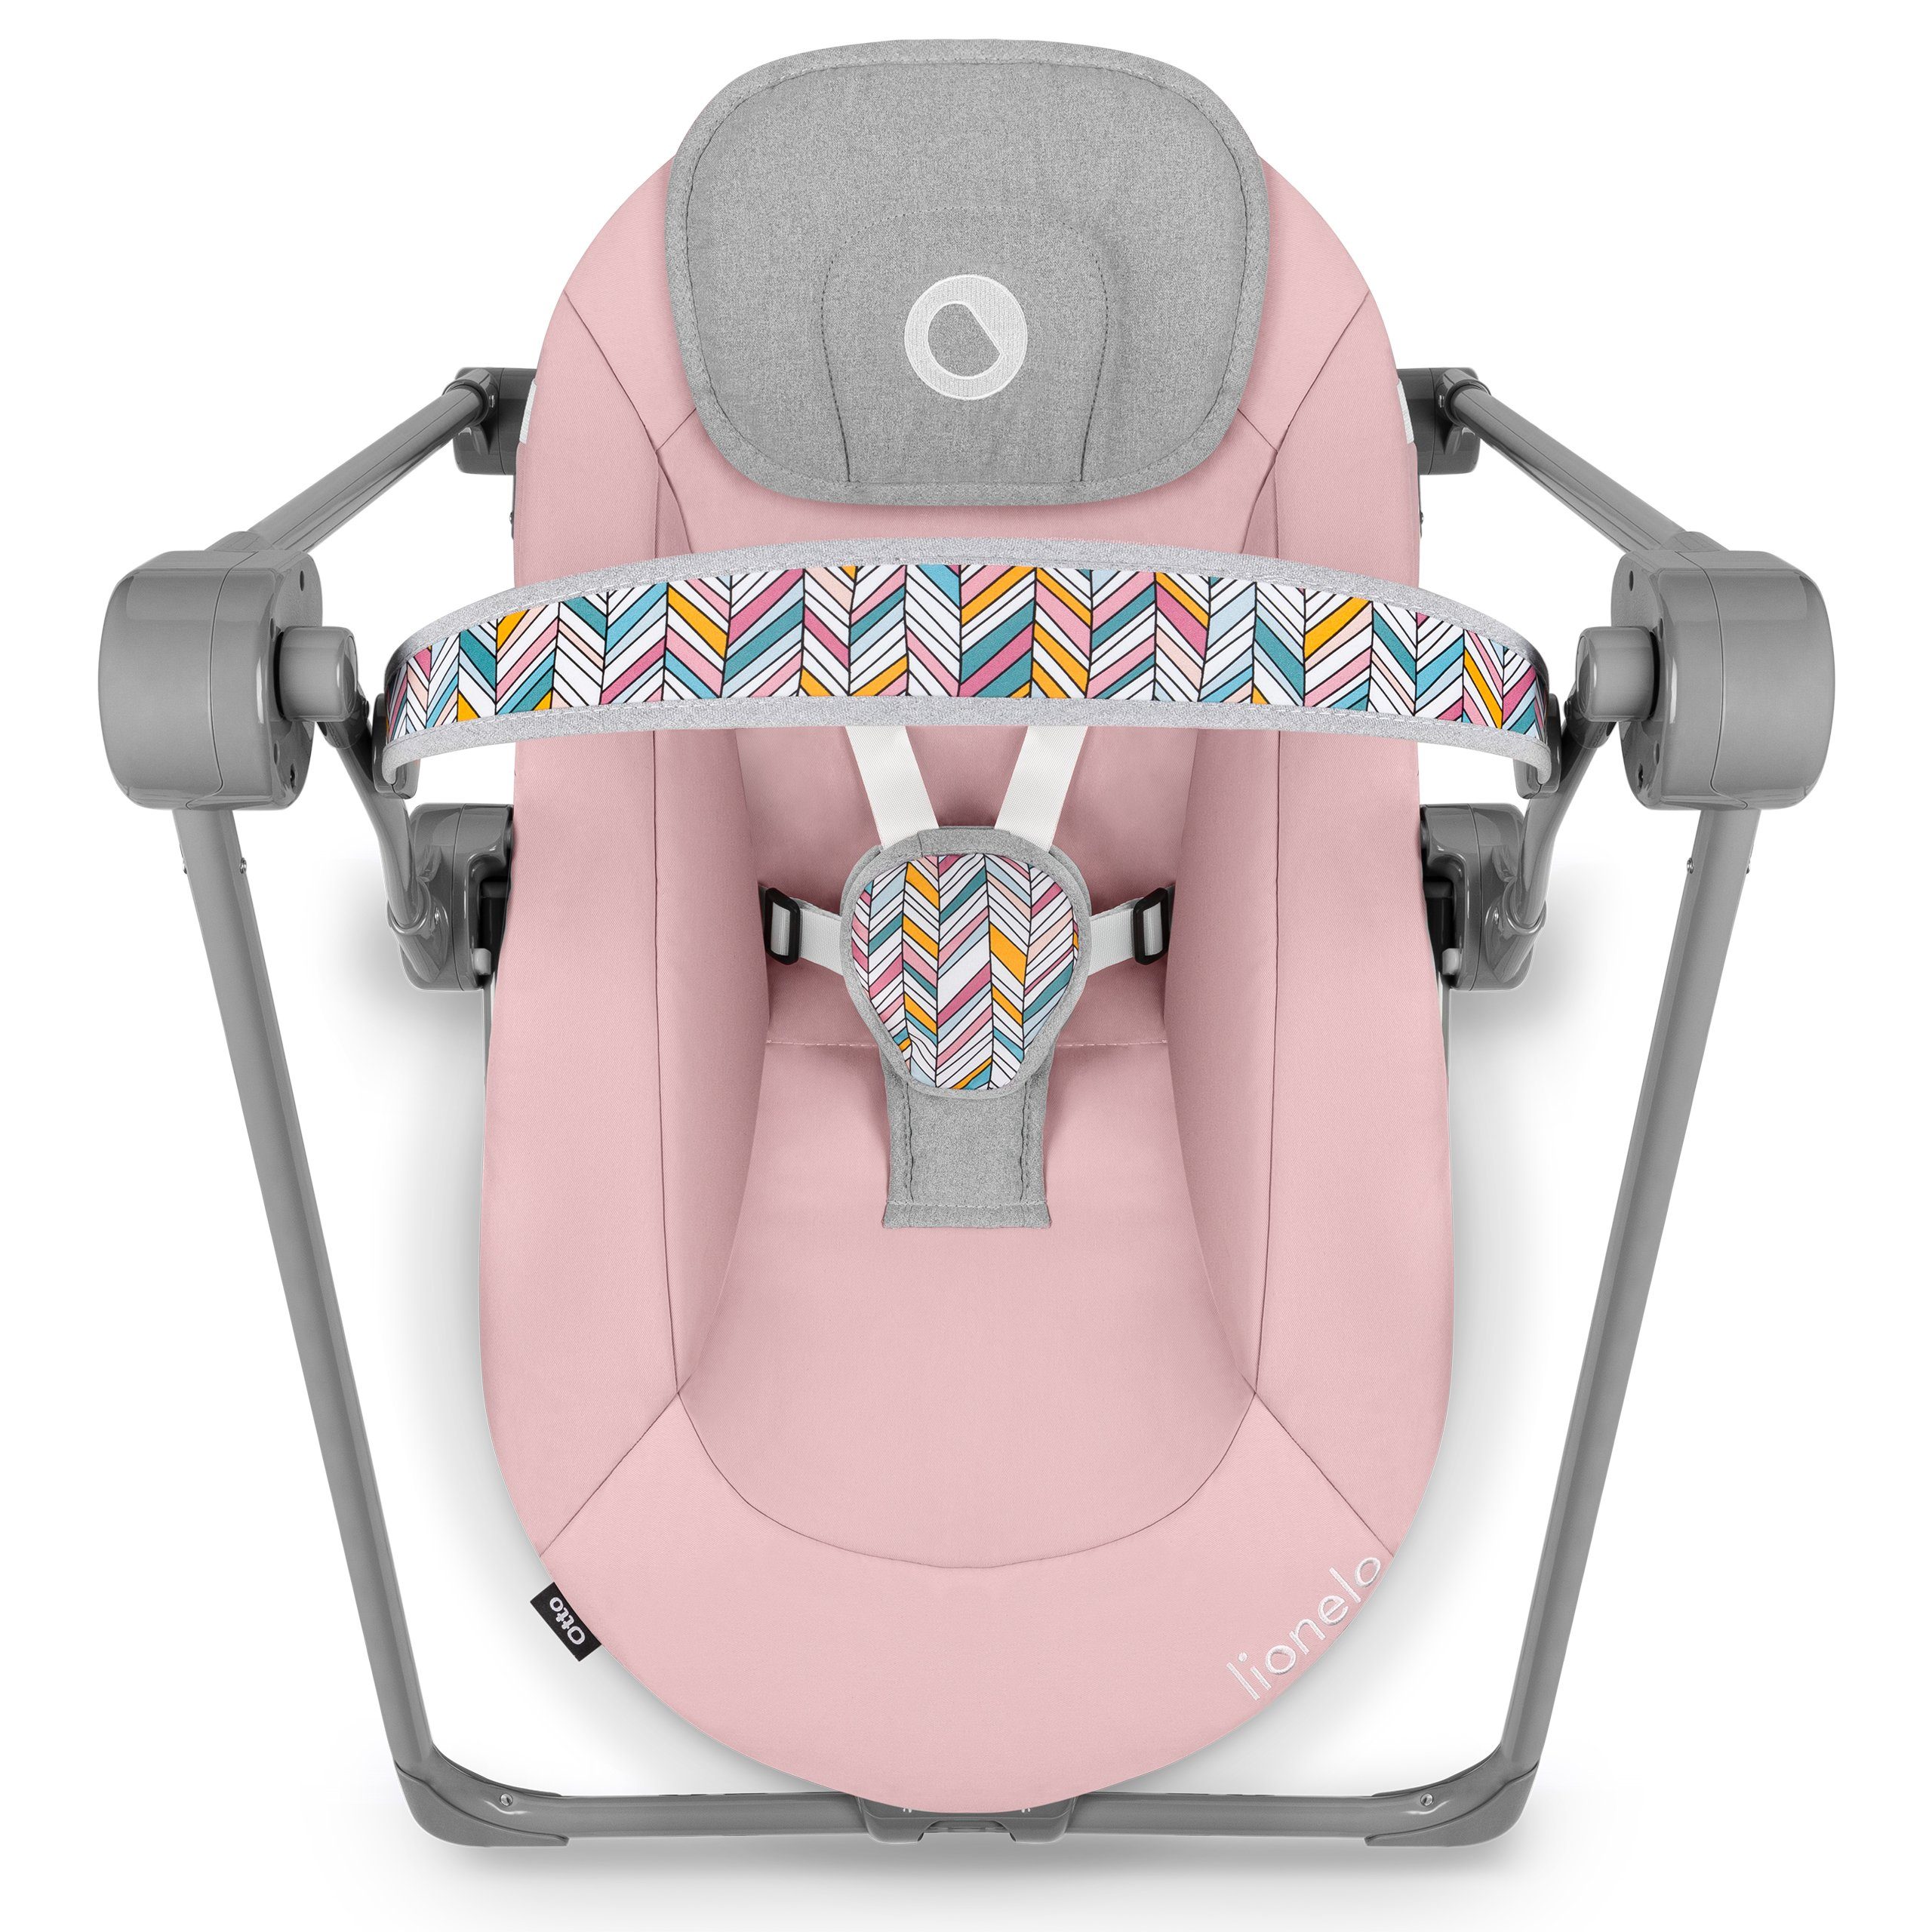 LO-OTTO, Spielzeug 0+ 9 Pink Karussell, stabil, bis und lionelo Wippfunktion, kg Babyschaukel Sicher